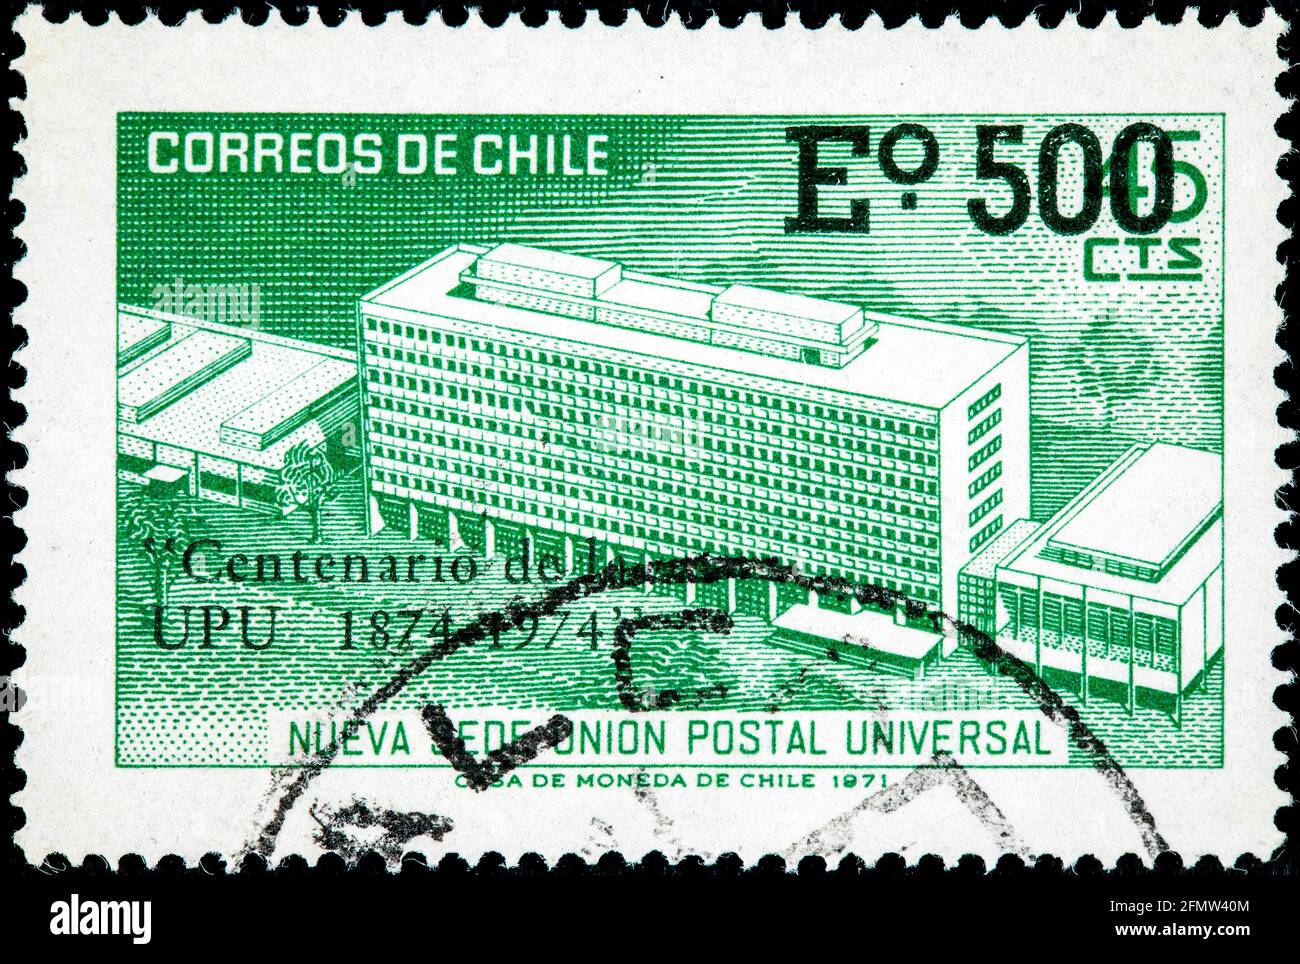 Cile - CIRCA 1971: Un francobollo stampato in Cile mostra la nuova sede dell'Unione postale universale, UPU, nel suo centenario, intorno al 1971 Foto Stock